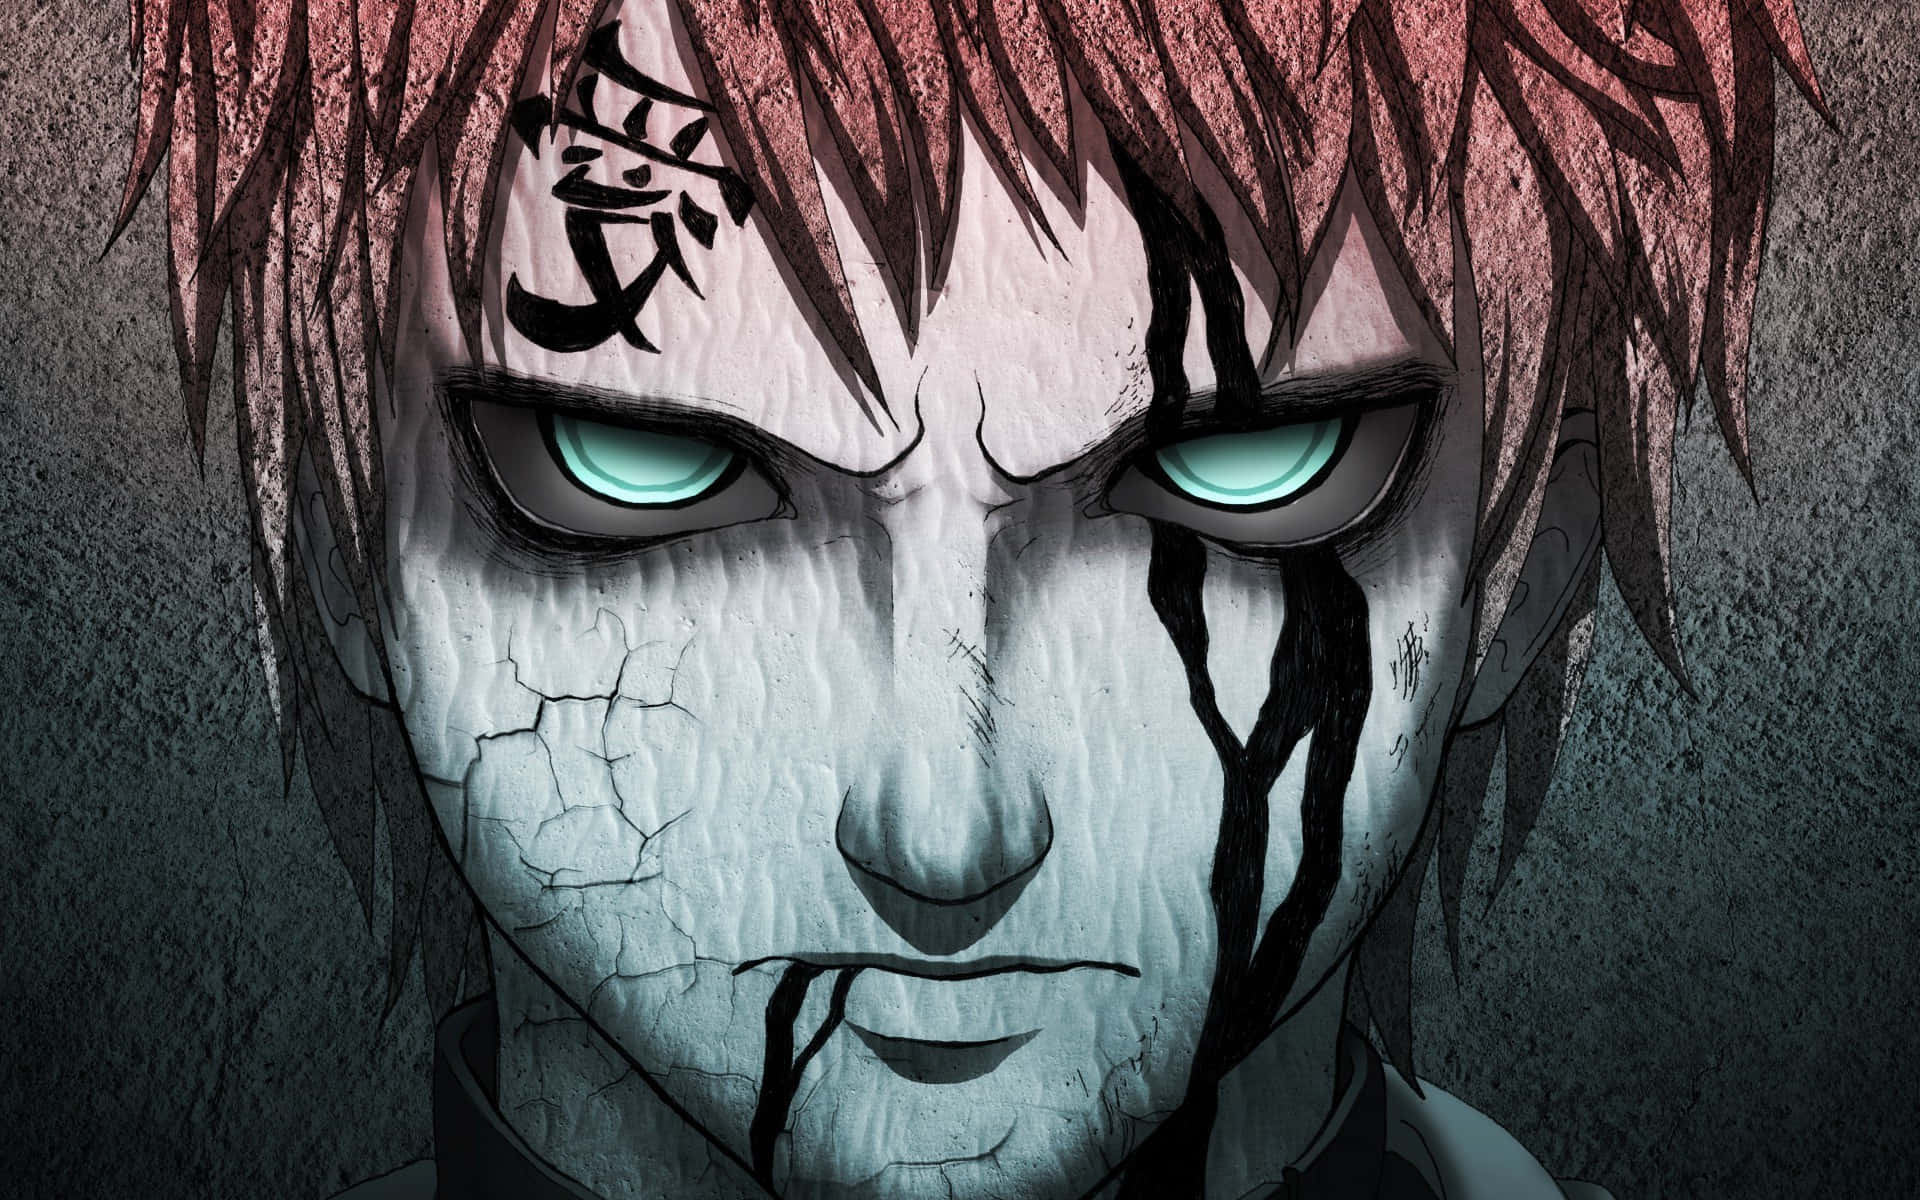 Download Gaara Red Eyes Naruto Anime Wallpaper